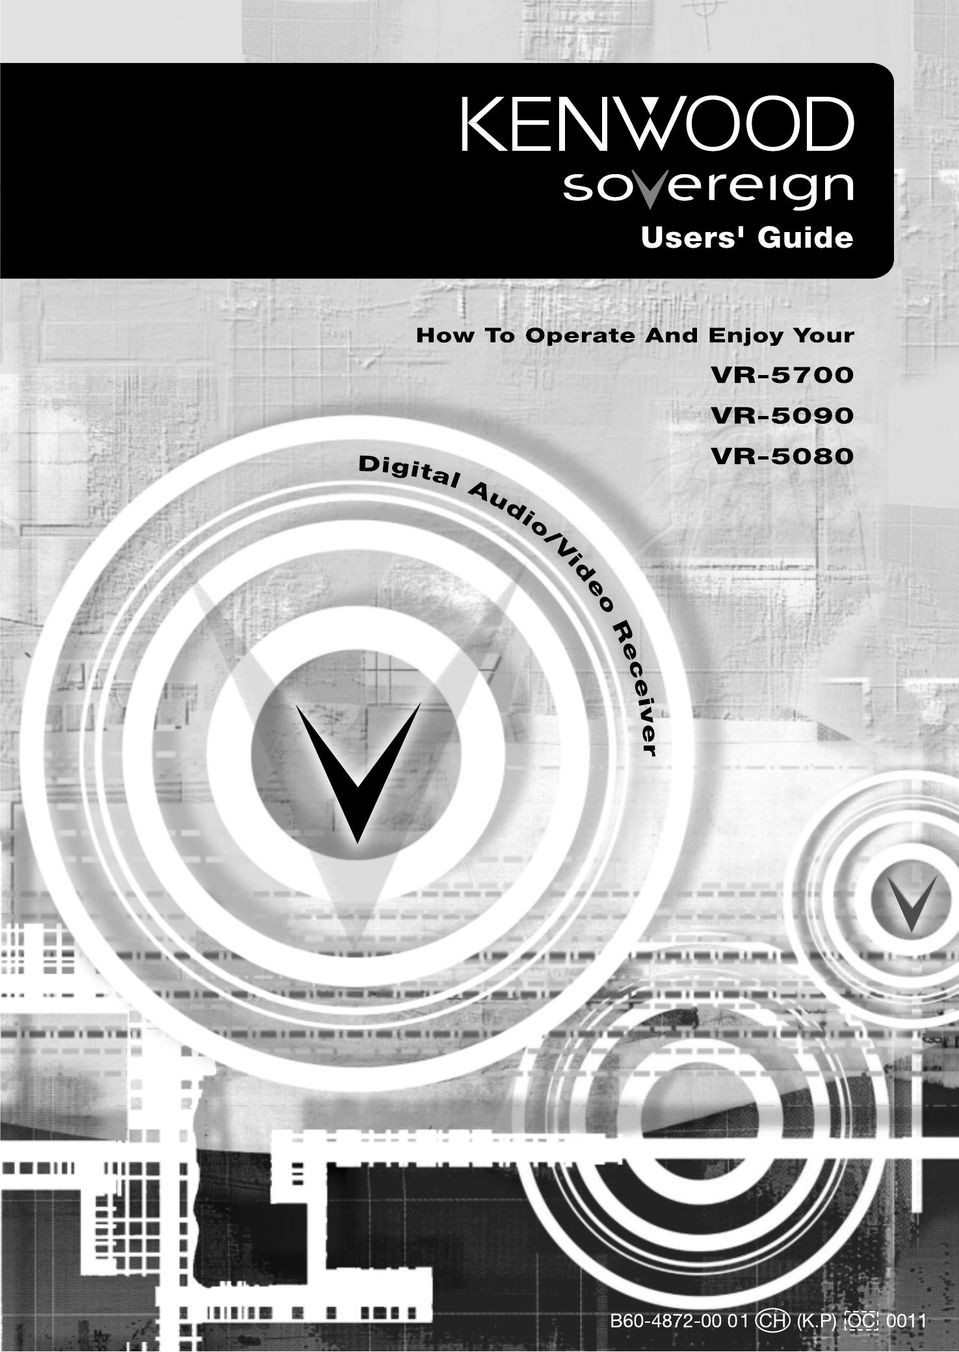 Kenwood VR-5700 DVR User Manual